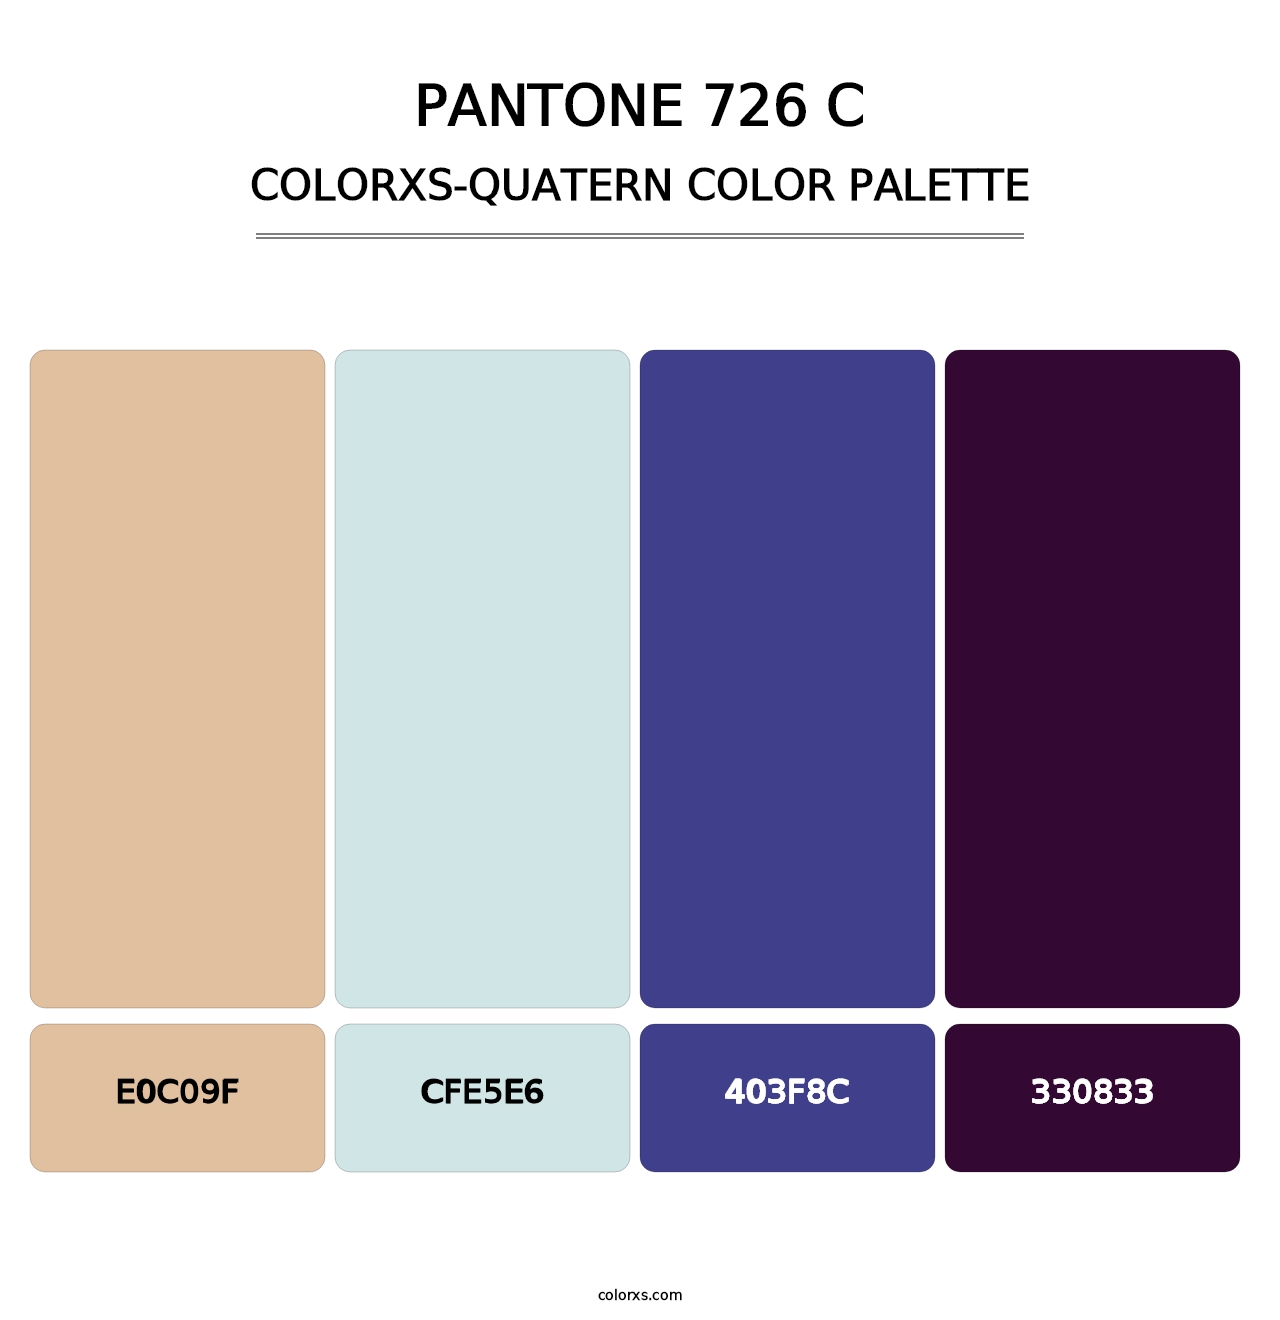 PANTONE 726 C - Colorxs Quatern Palette